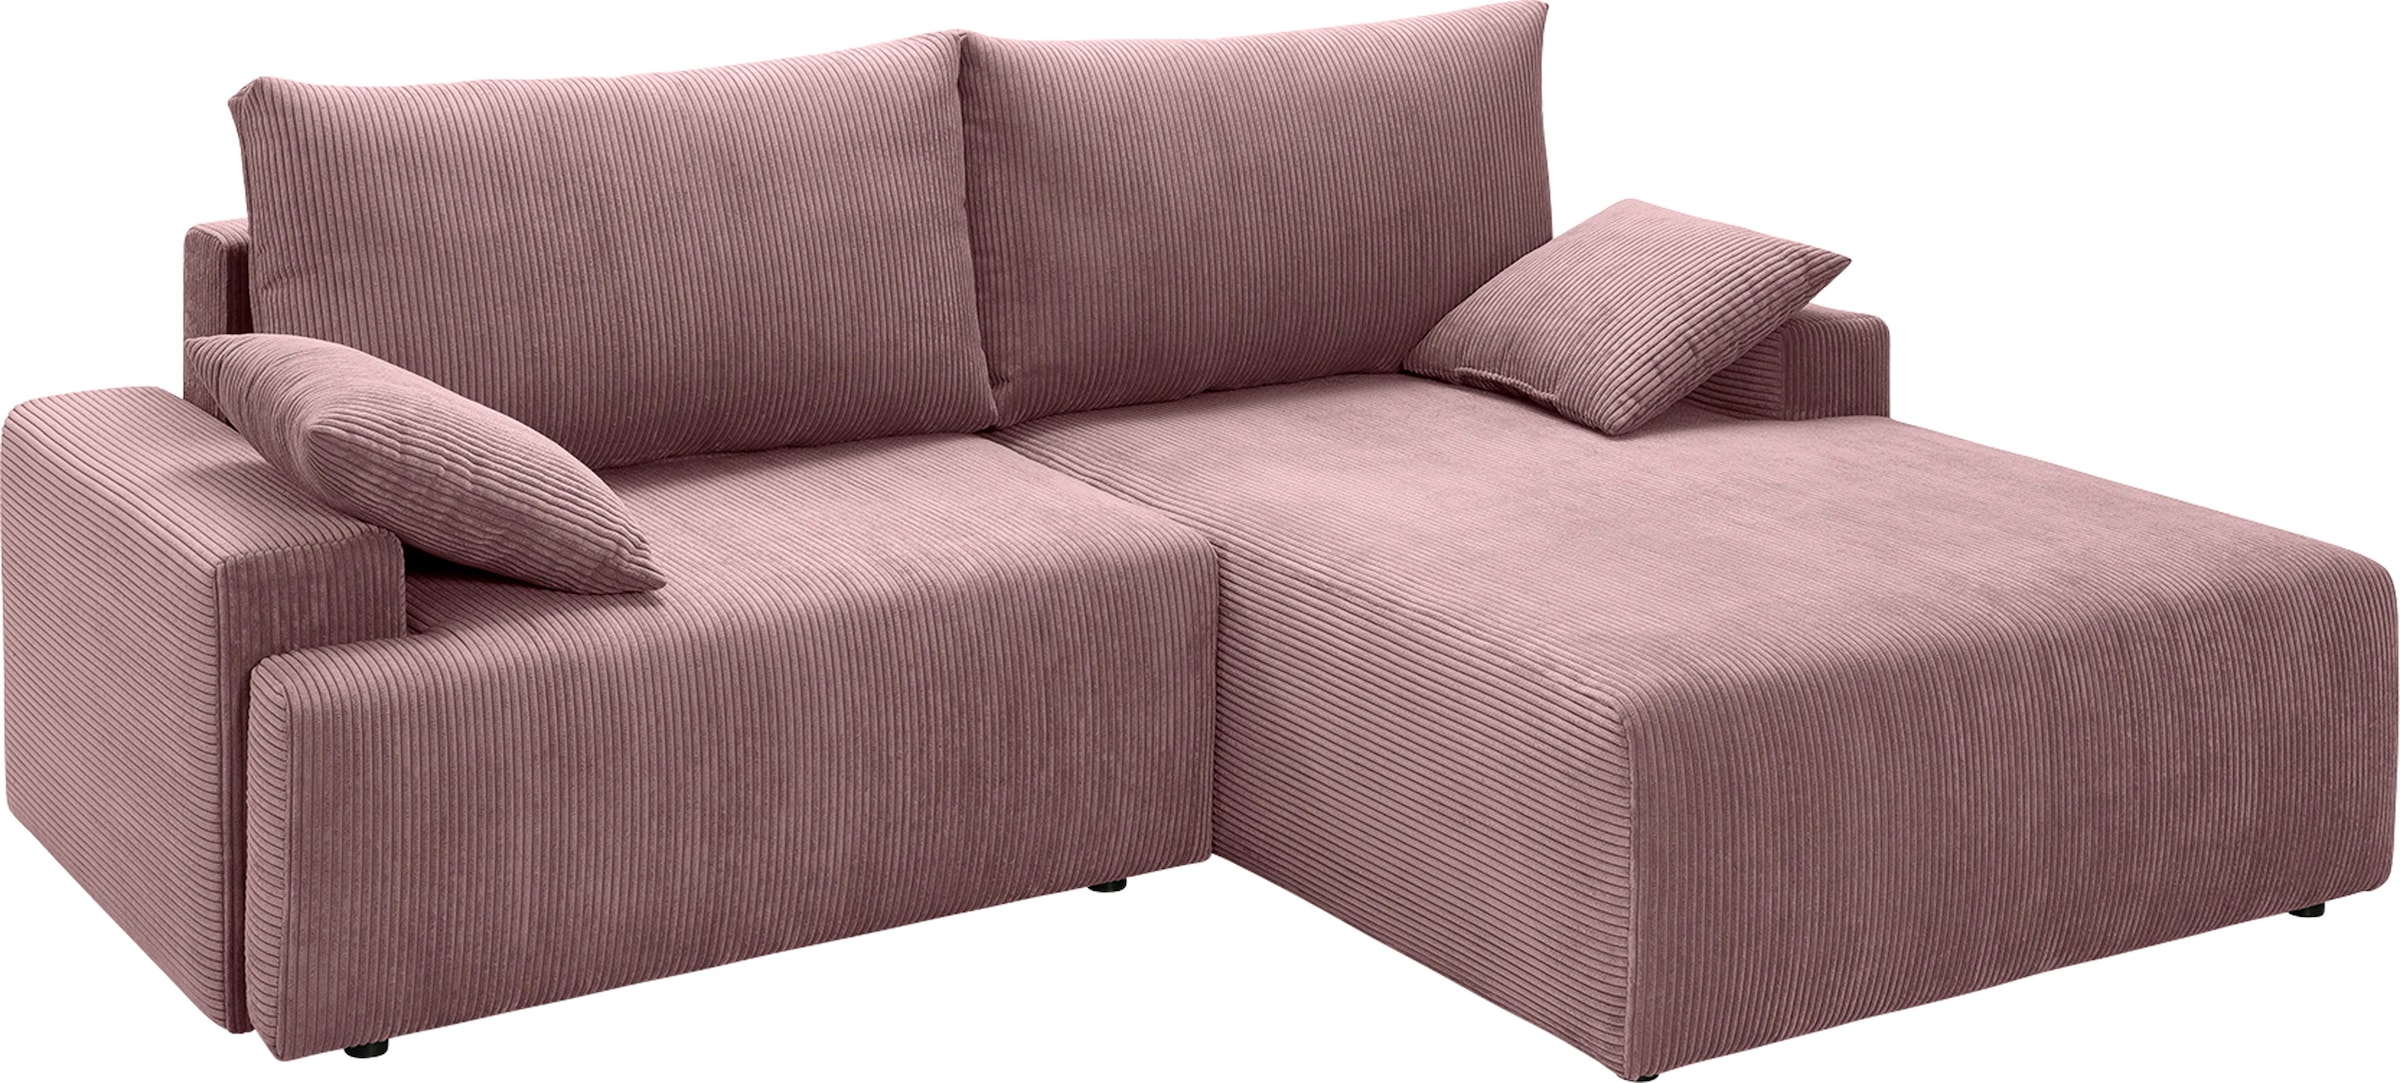 sofa »Orinoko«, kaufen und in verschiedenen Bettfunktion jetzt Cord-Farben fashion Bettkasten Ecksofa - inklusive exxpo